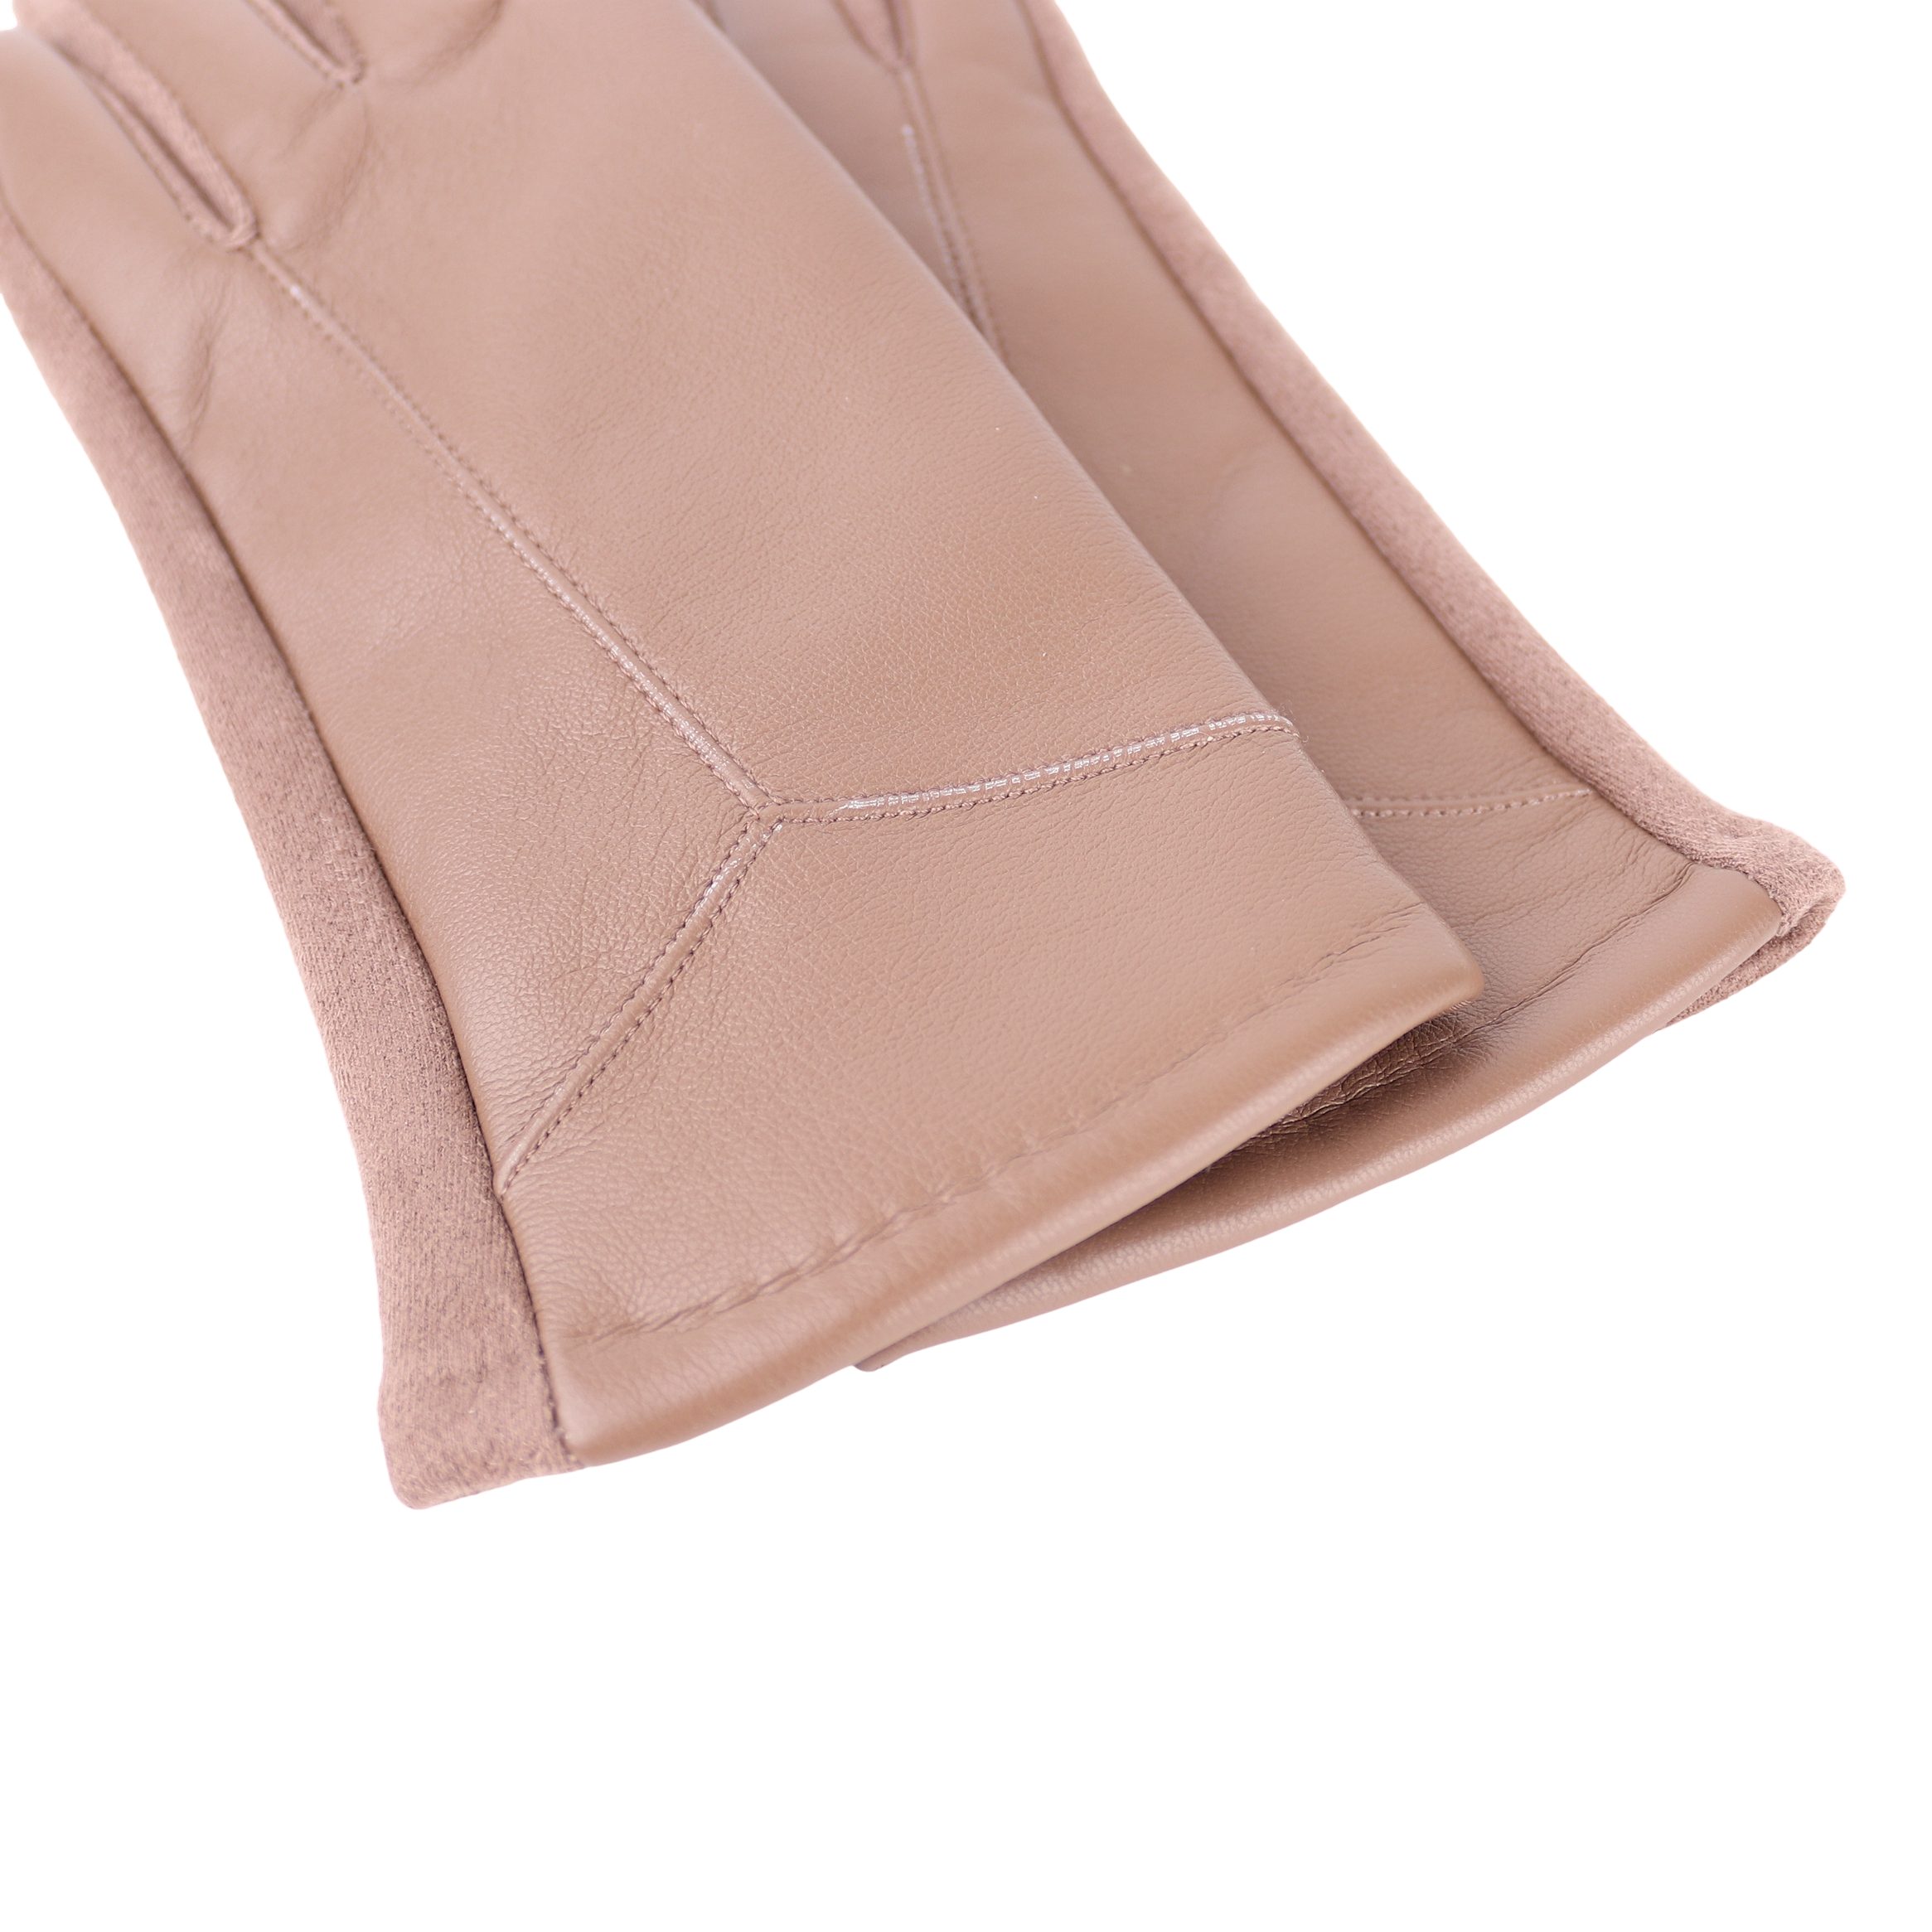 ideal Veganleder weich Lederhandschuhe Winter Damen für Touchscreen ONESIZE Handschuhe Taupe warm und Warm gefüttert MIRROSI sehr aus Herbst oder